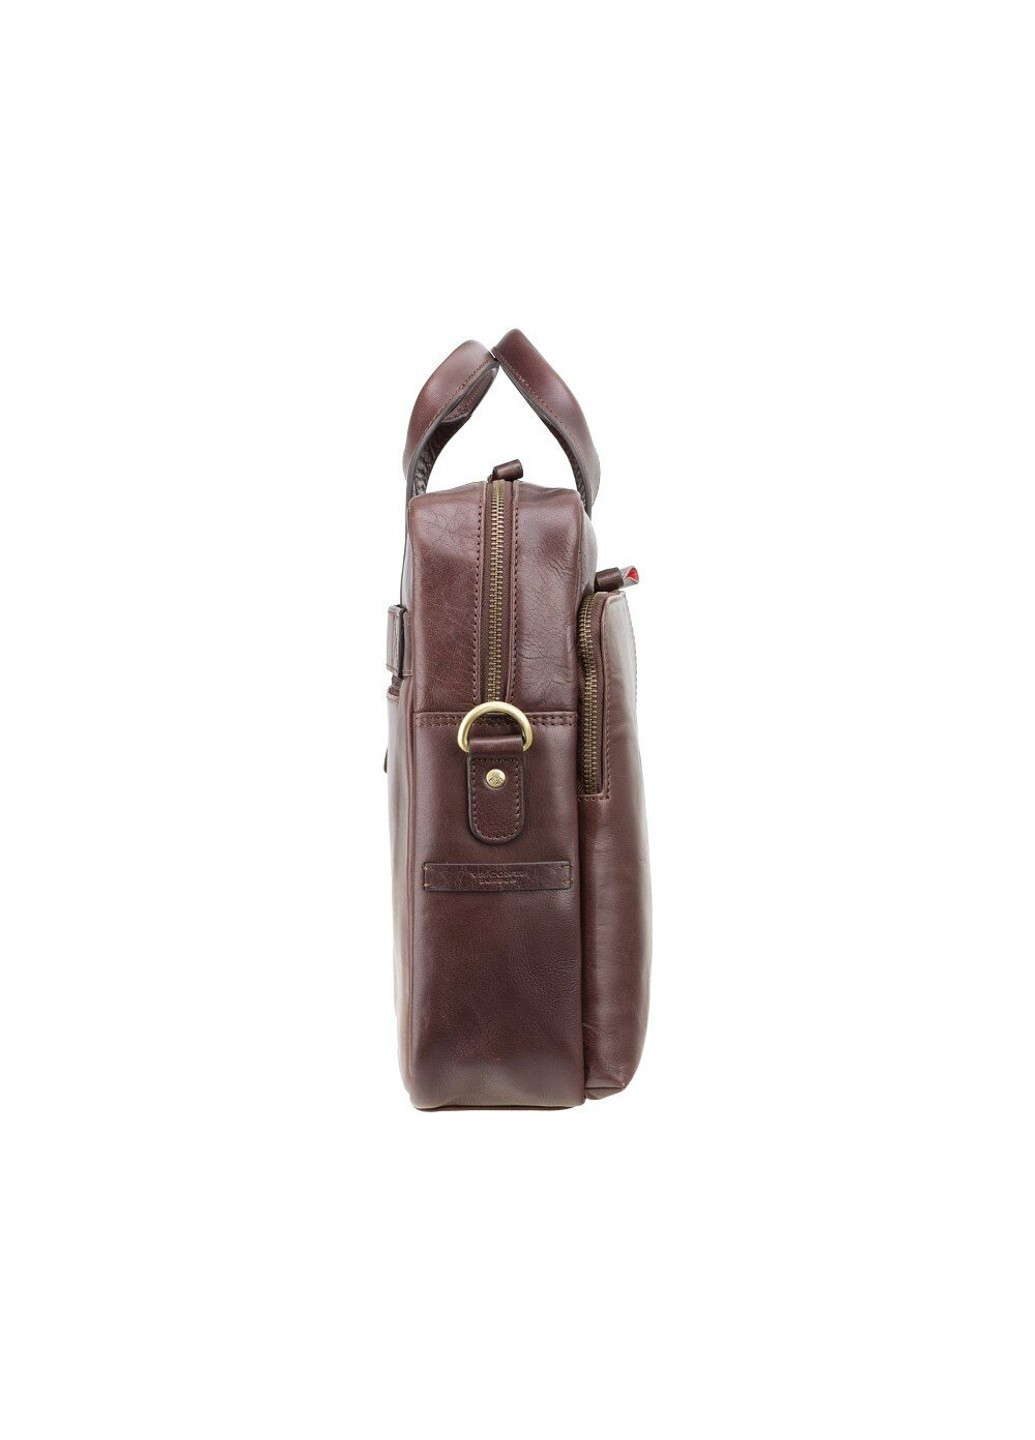 Мужская кожаная сумка с RFID защитой ml30 blk Visconti (262086626)